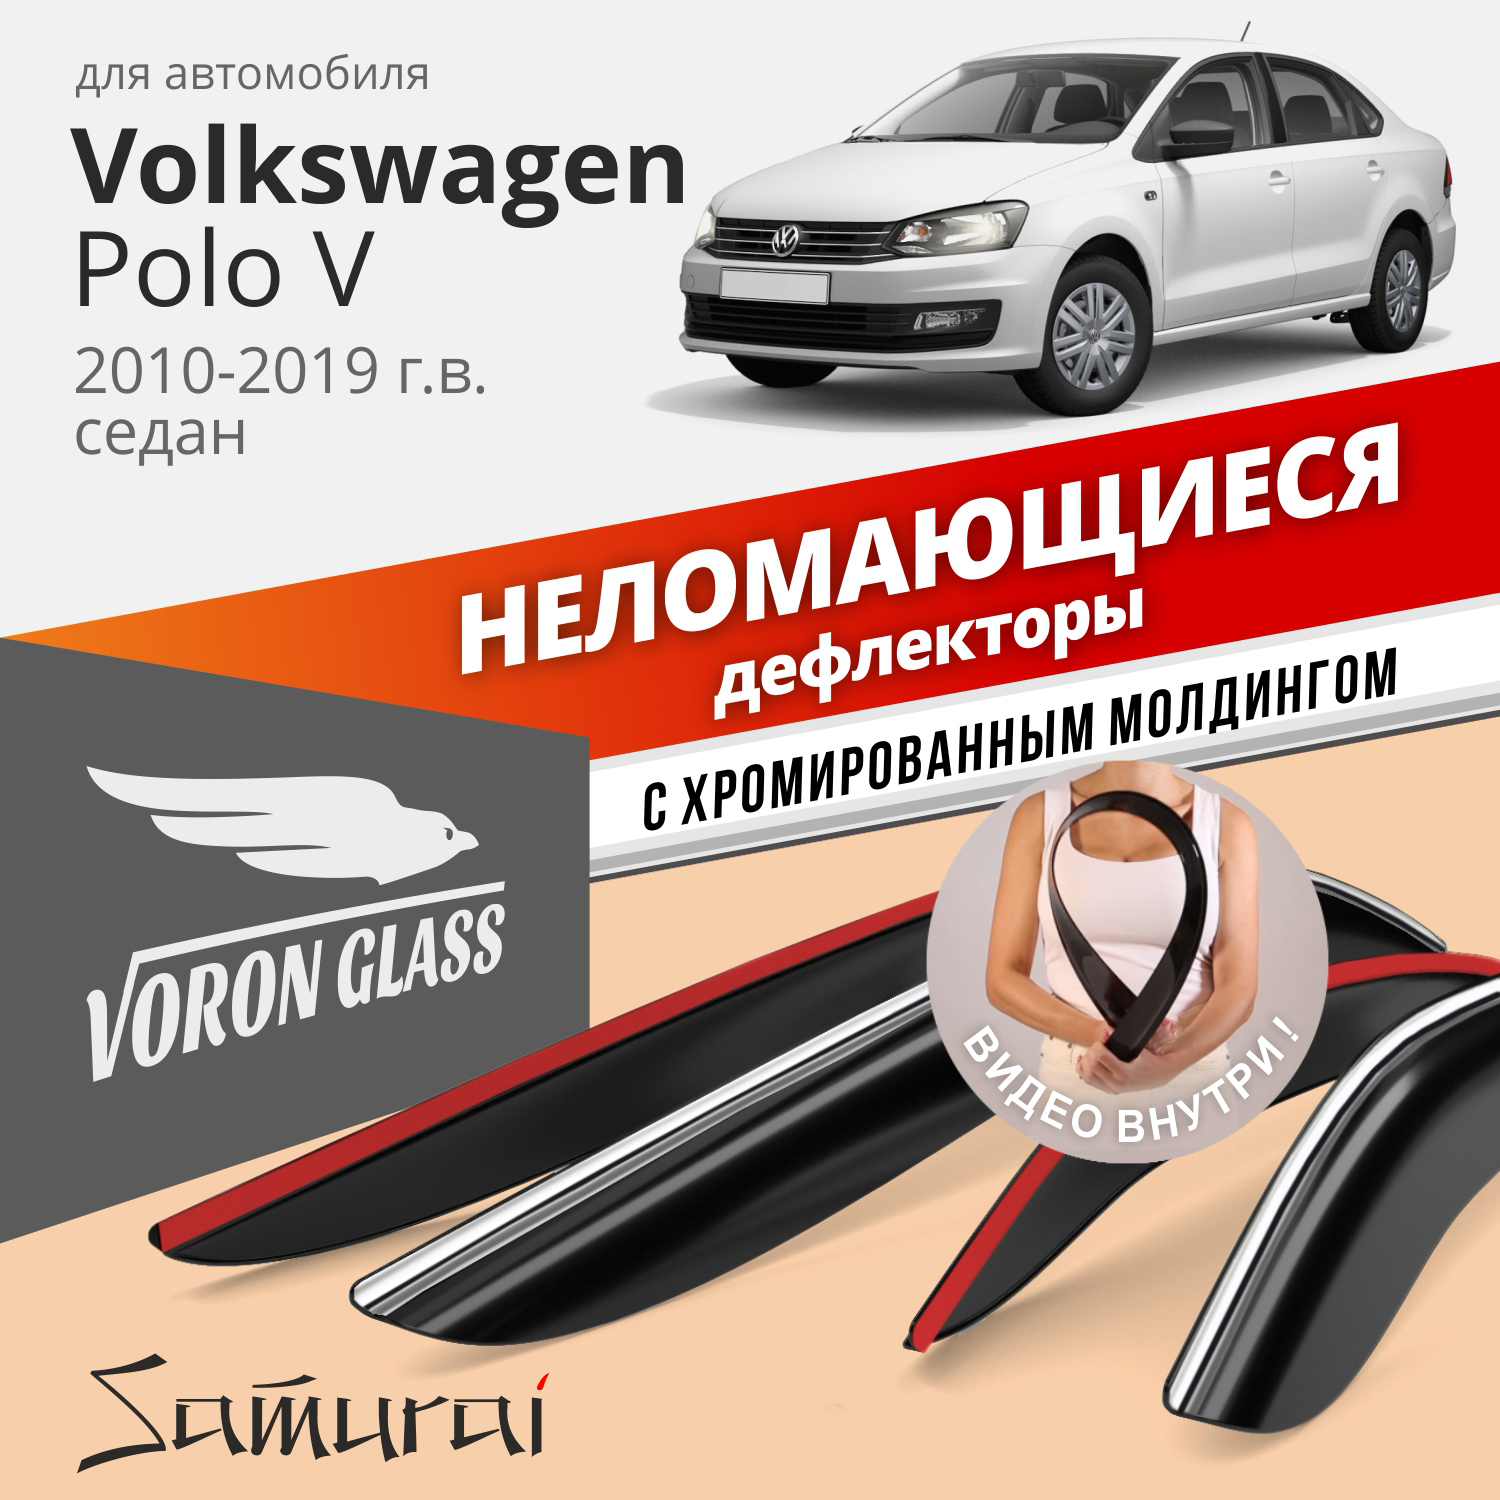 Дефлекторы Voron Glass серия Samurai Volkswagen Polo V 2010-2019 г.в. седан, хром молдинг